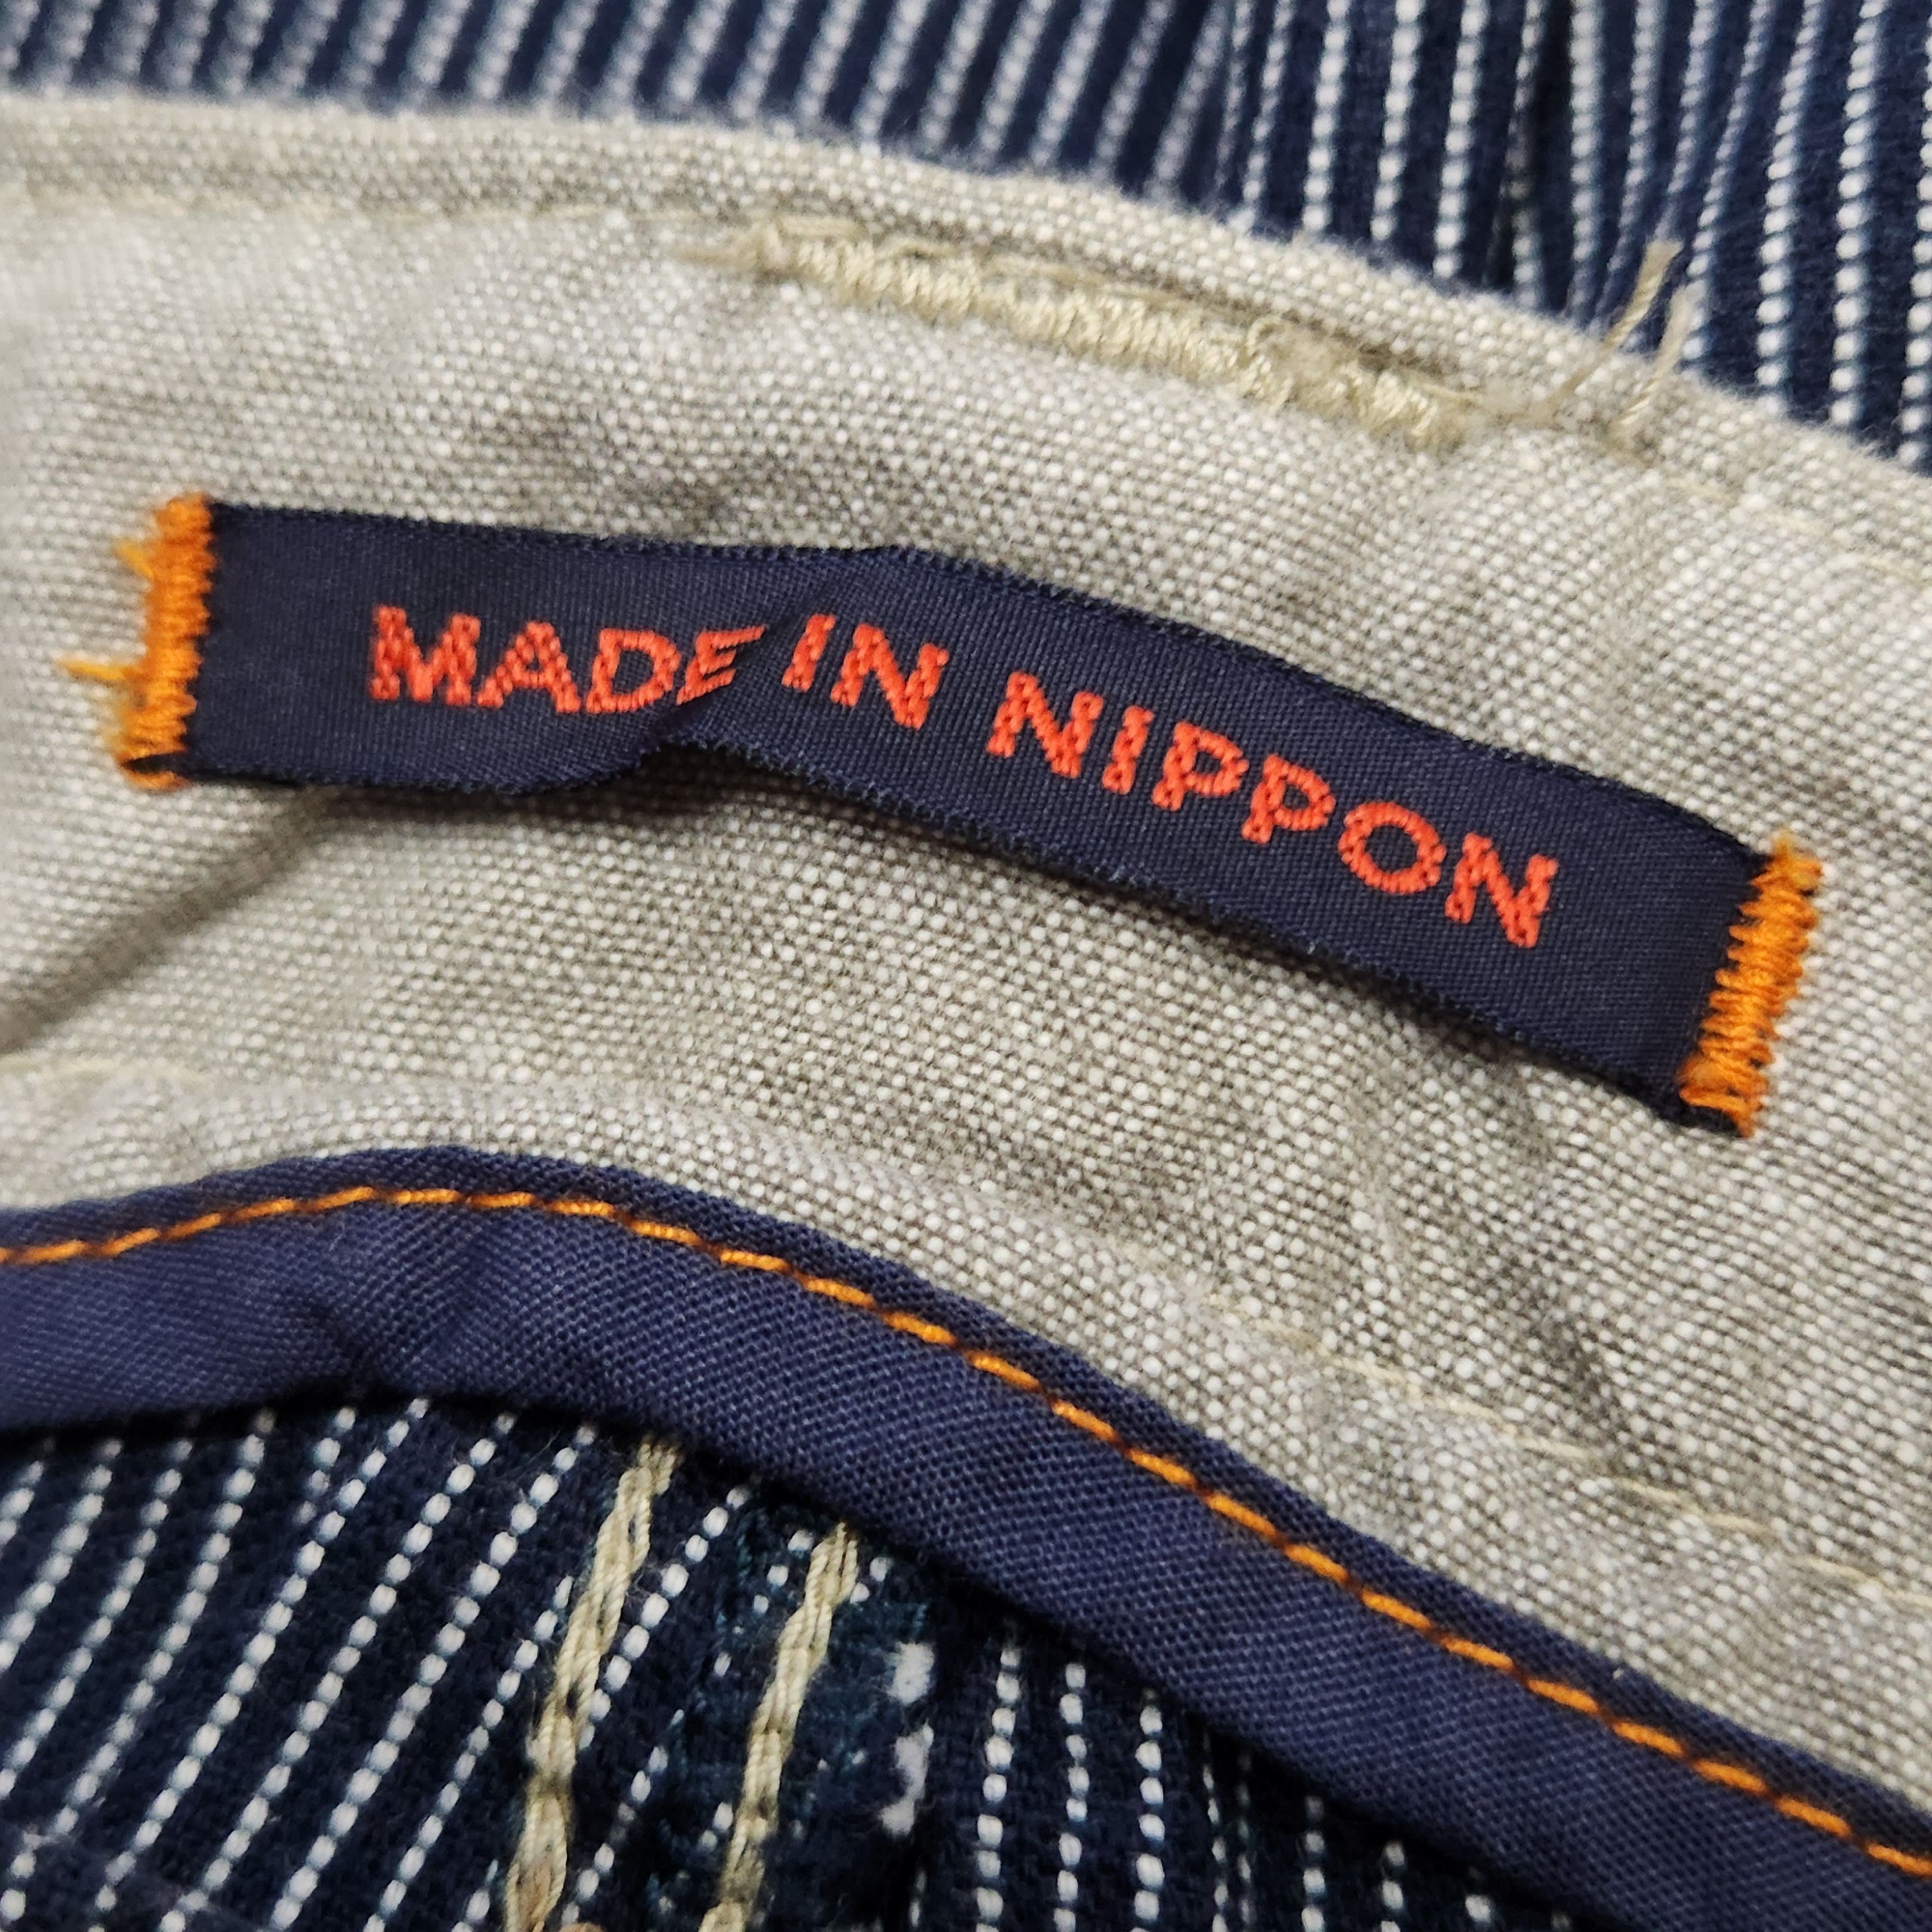 Japanese Brand - Flare ET Boite Flare Denim Jeans Japan - 6